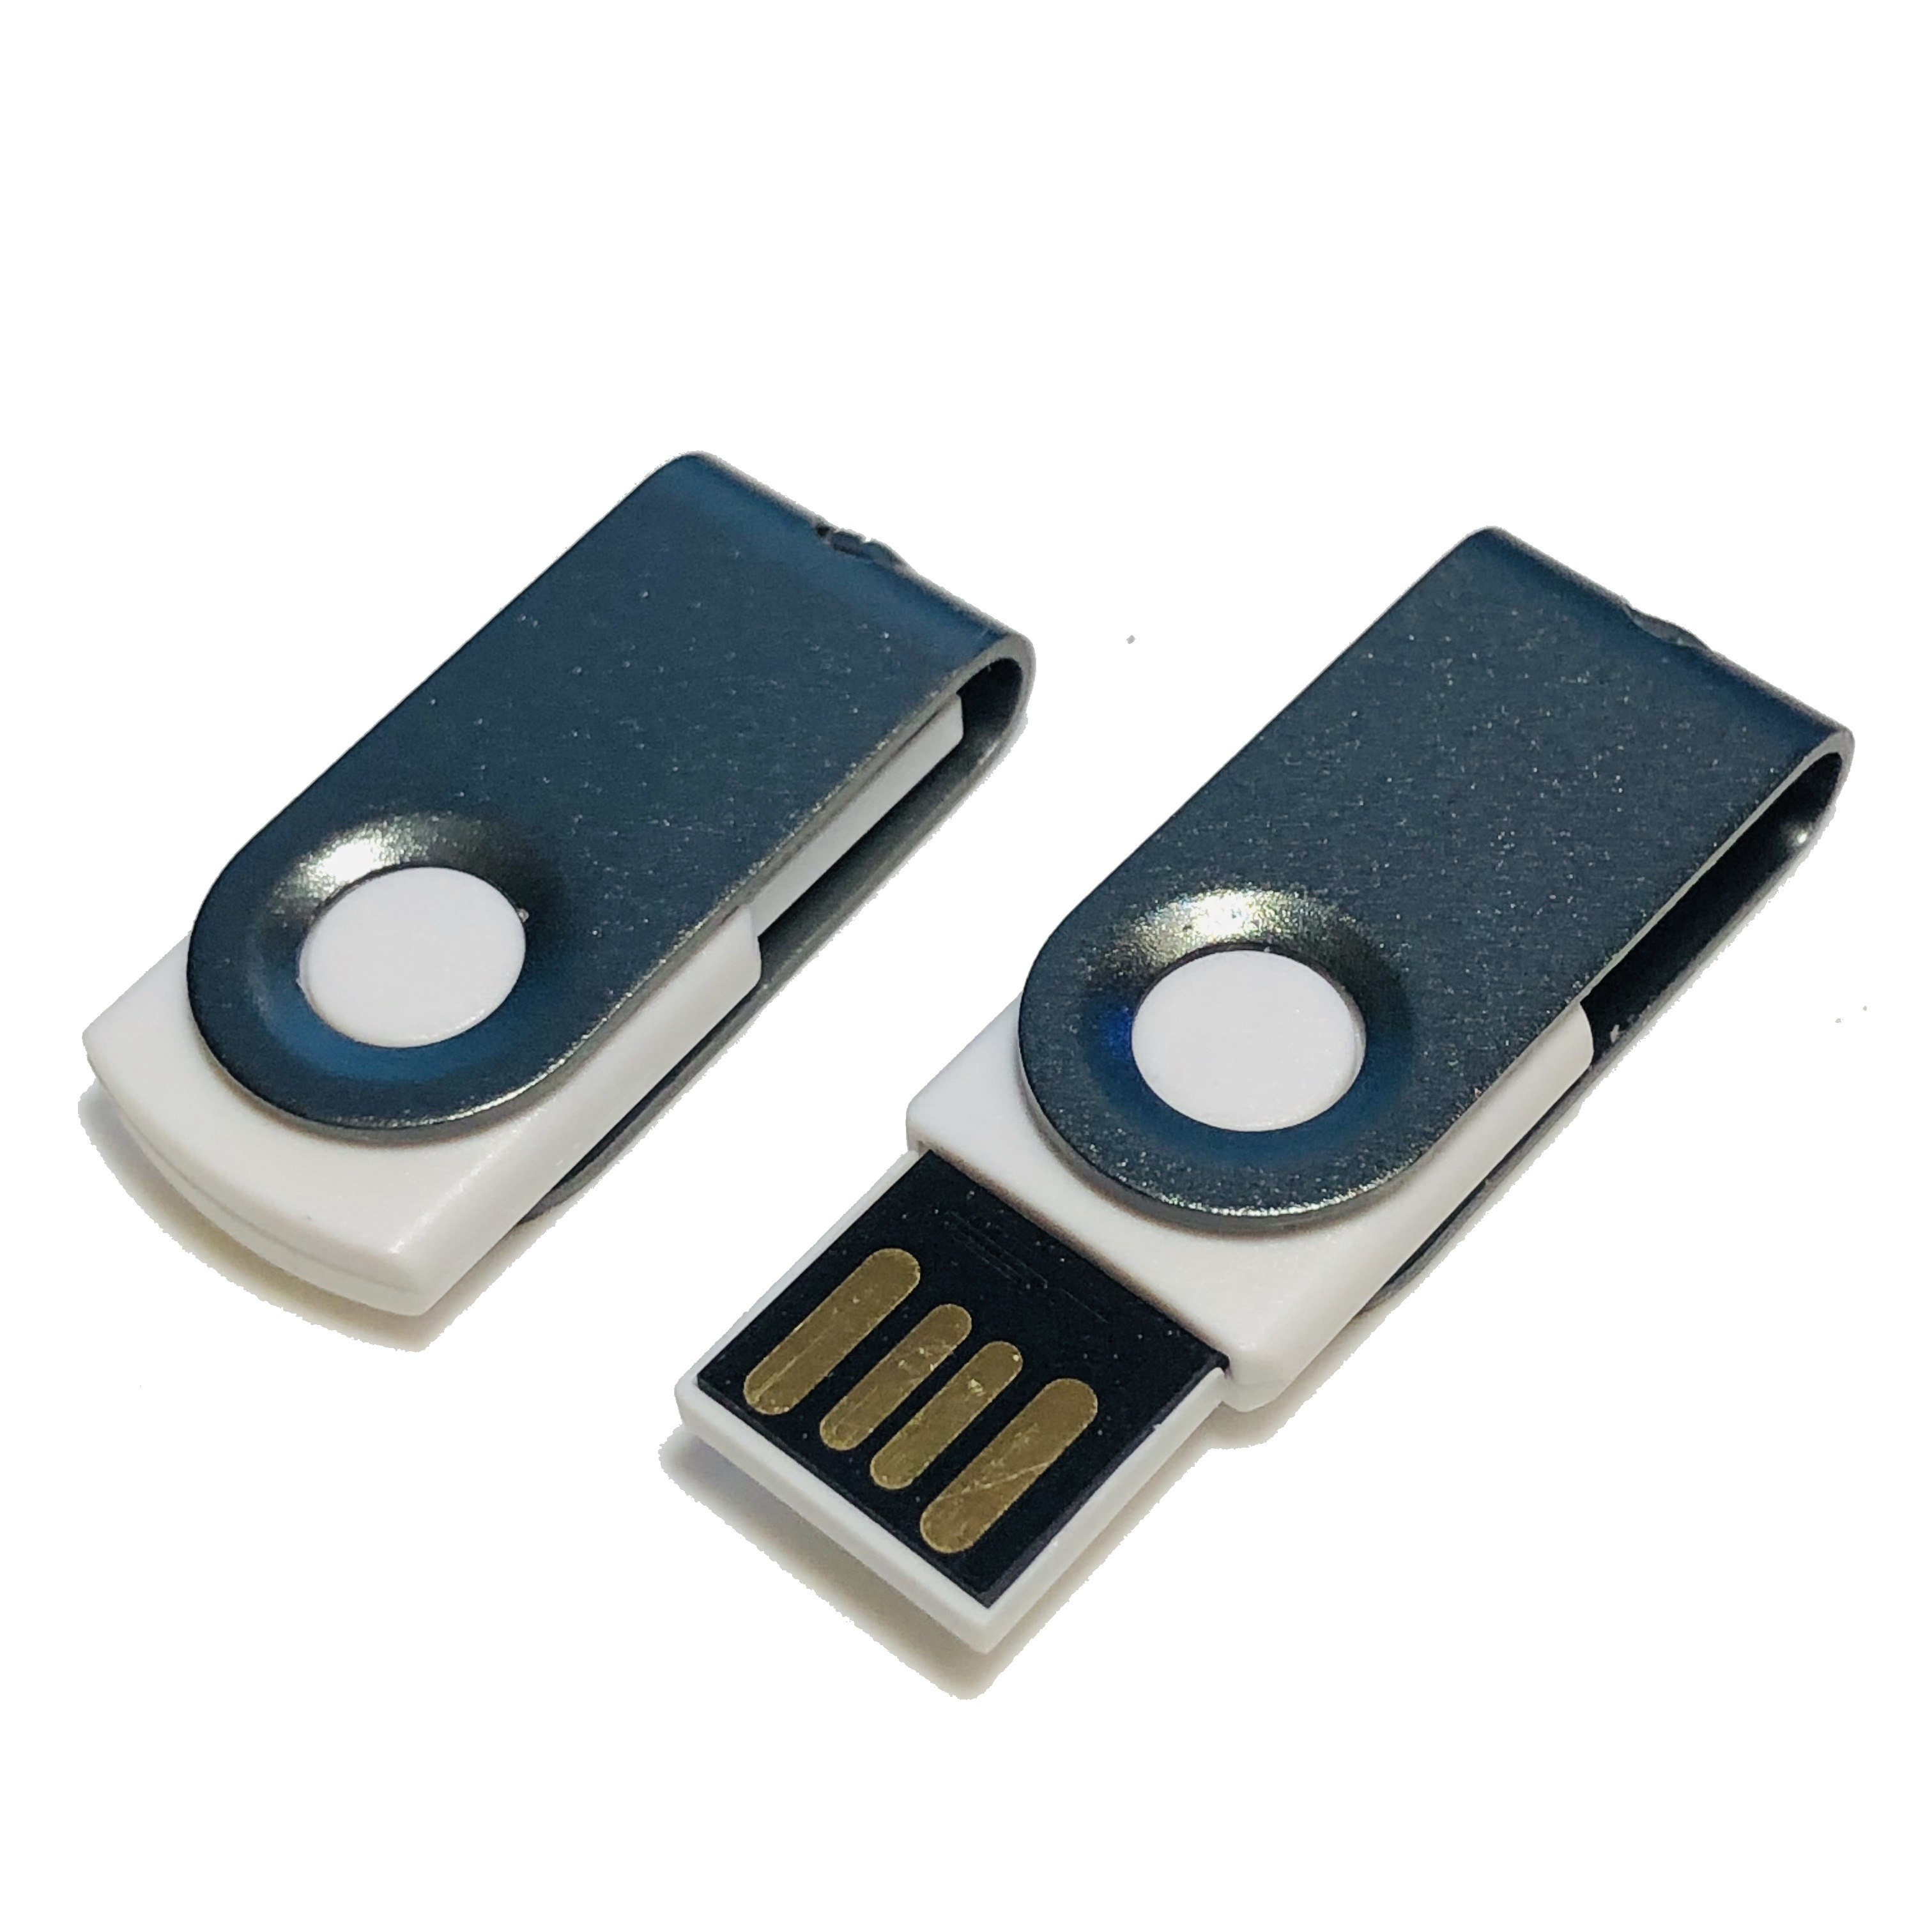 GB) 64 USB USB-Stick GERMANY (Weiß-Graumetall, MINI-SWIVEL ®